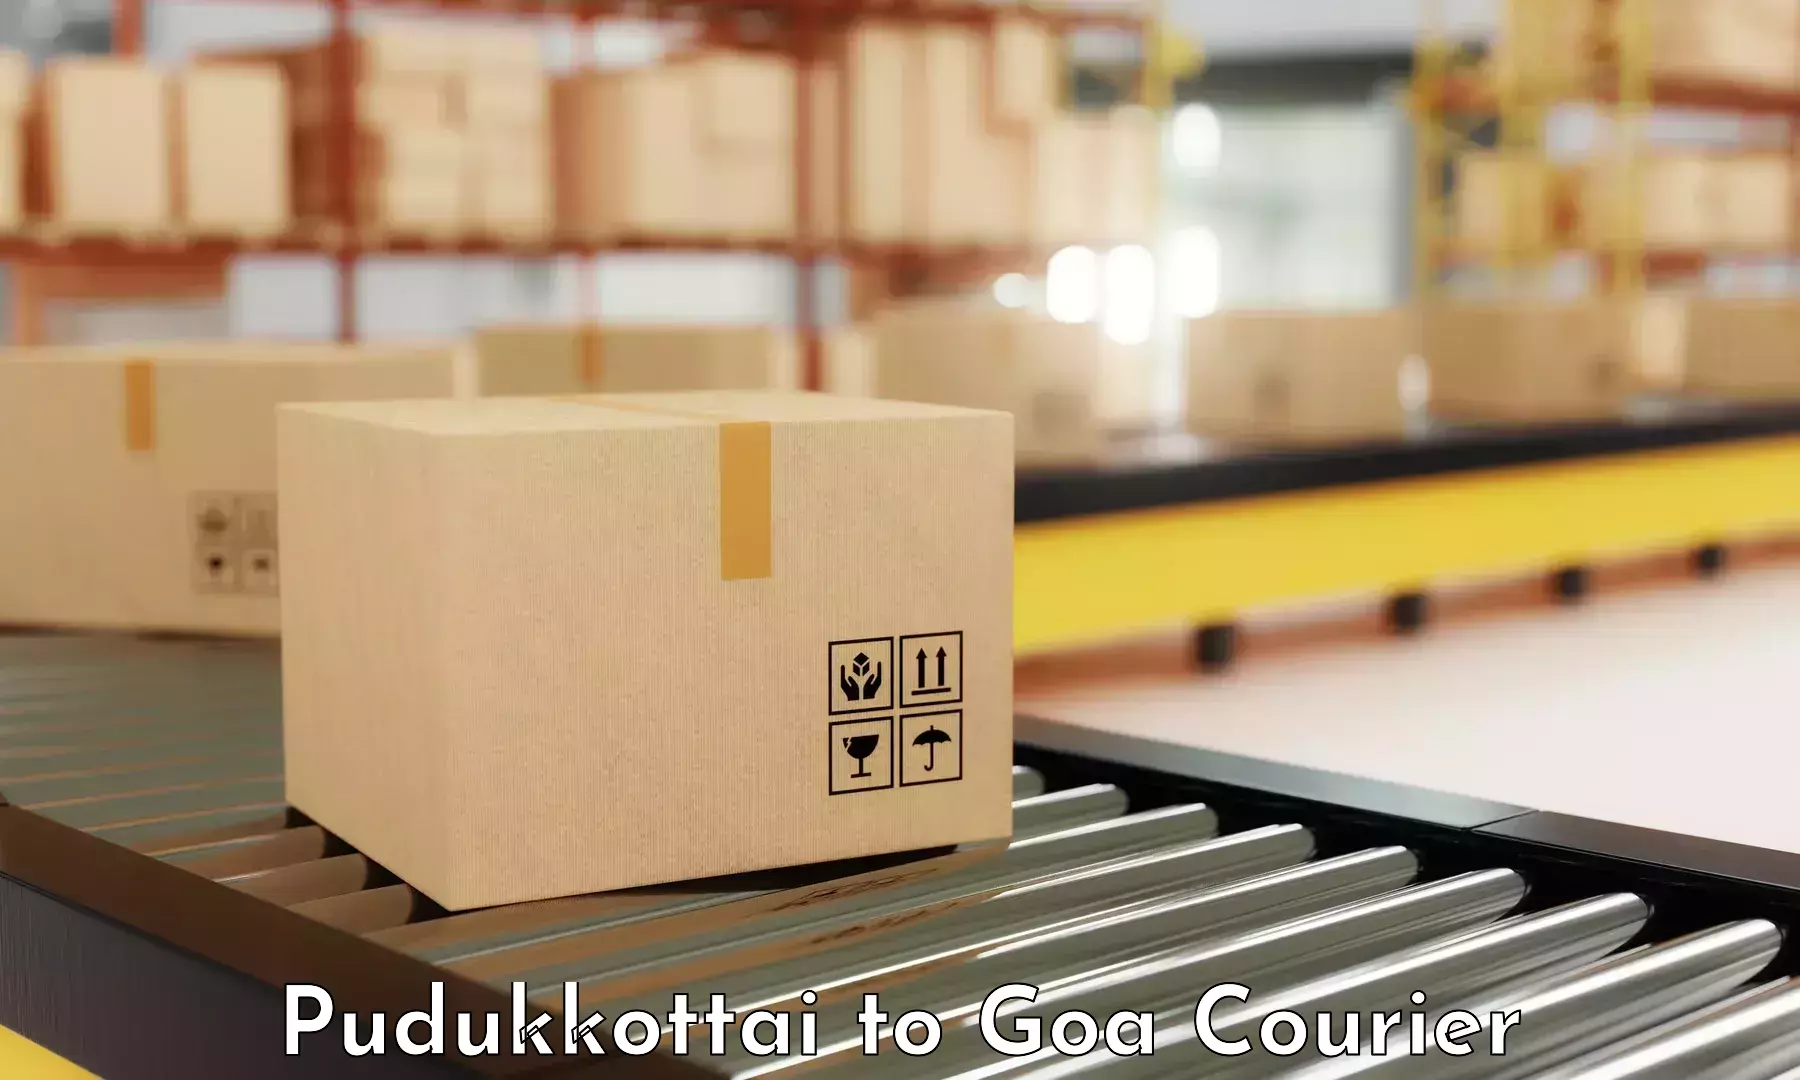 Efficient logistics management Pudukkottai to Goa